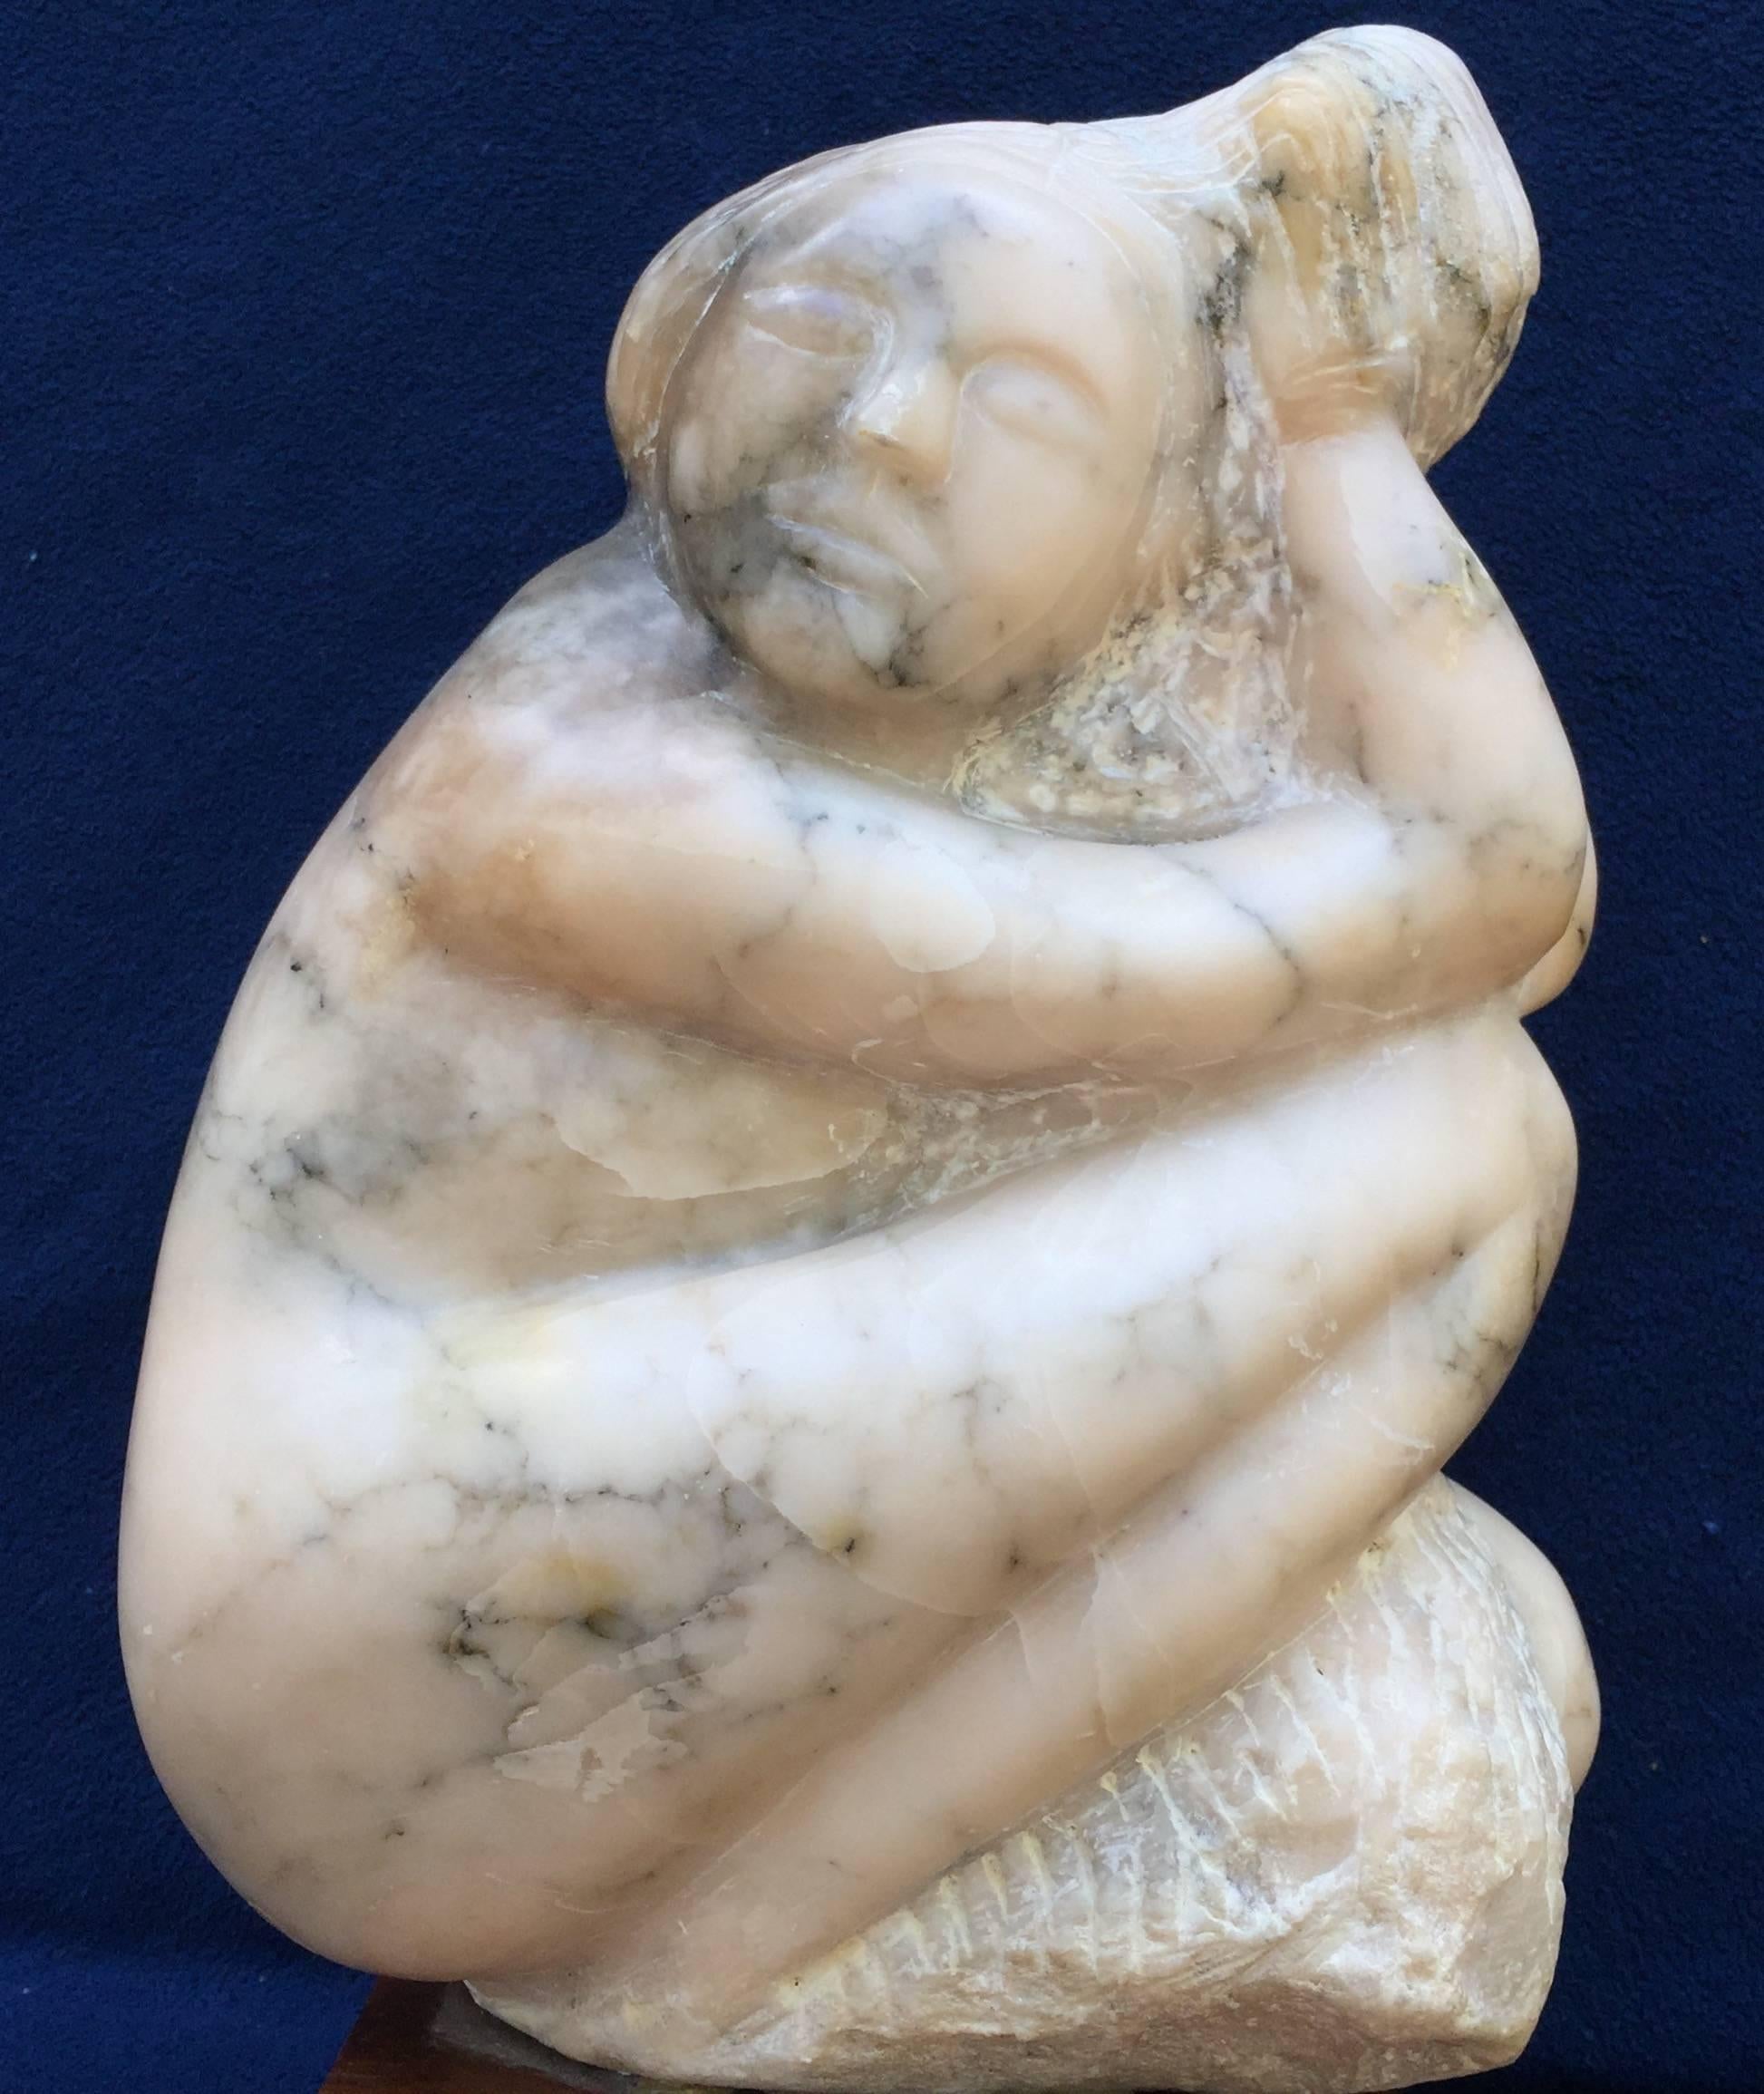 Unknown Figurative Sculpture - "Female"